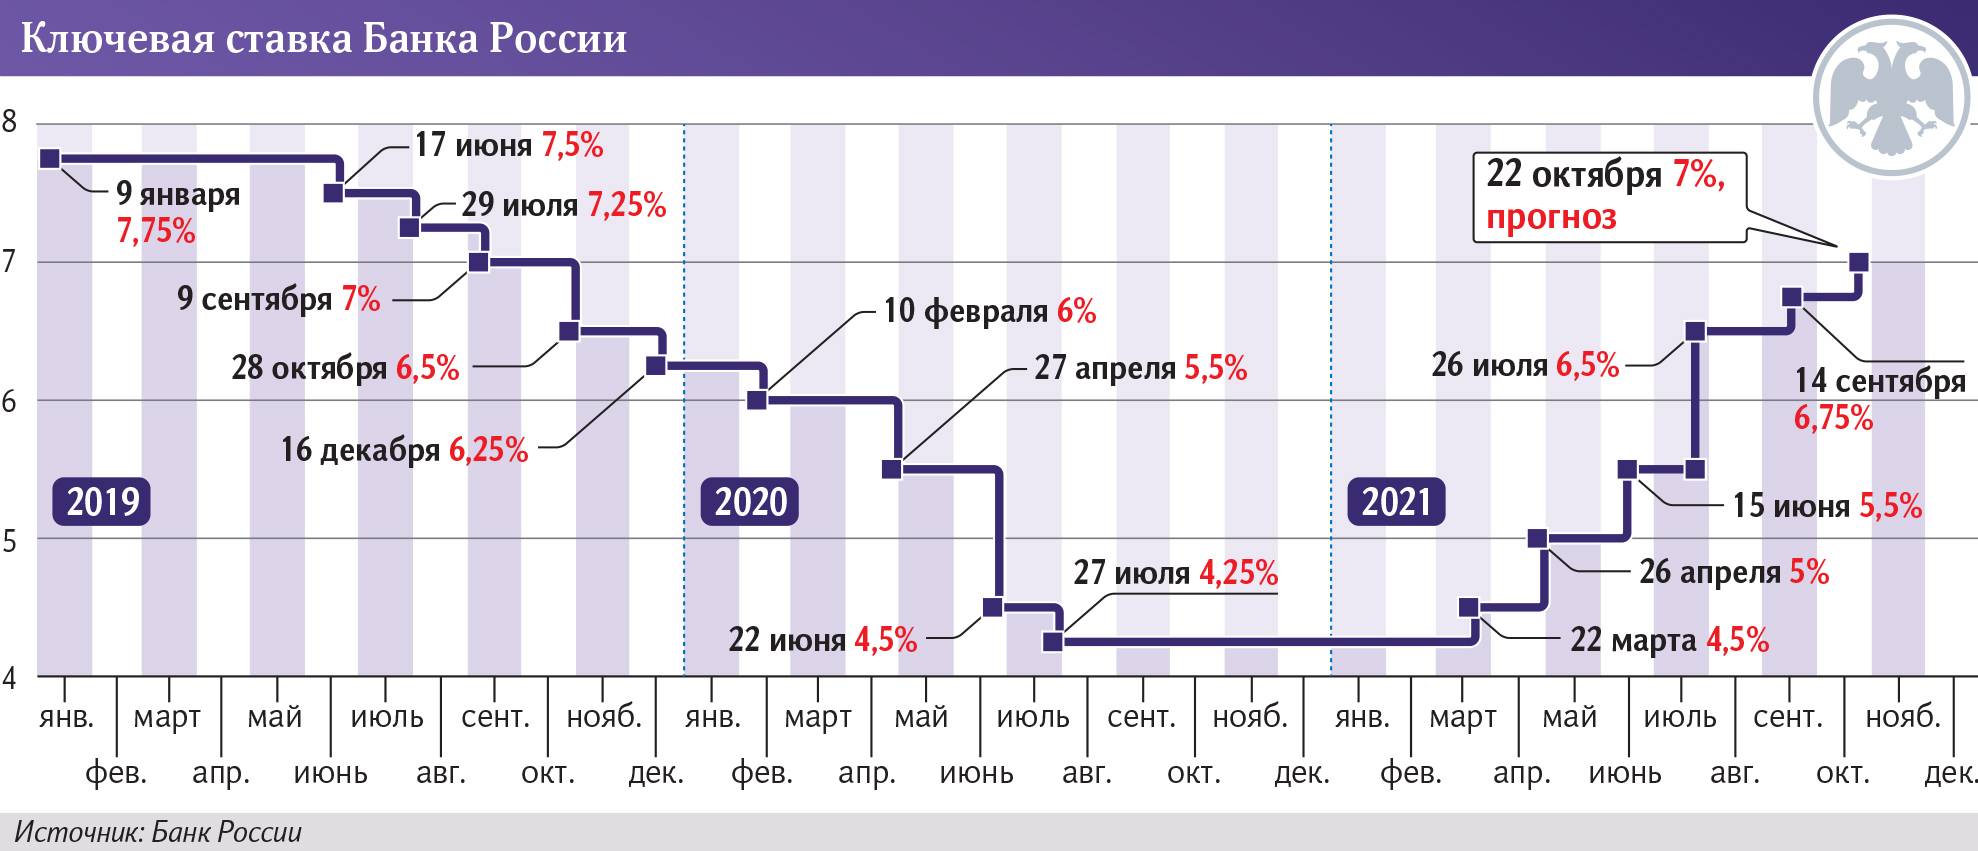 Центральный банк россии 2022. ключевая ставка